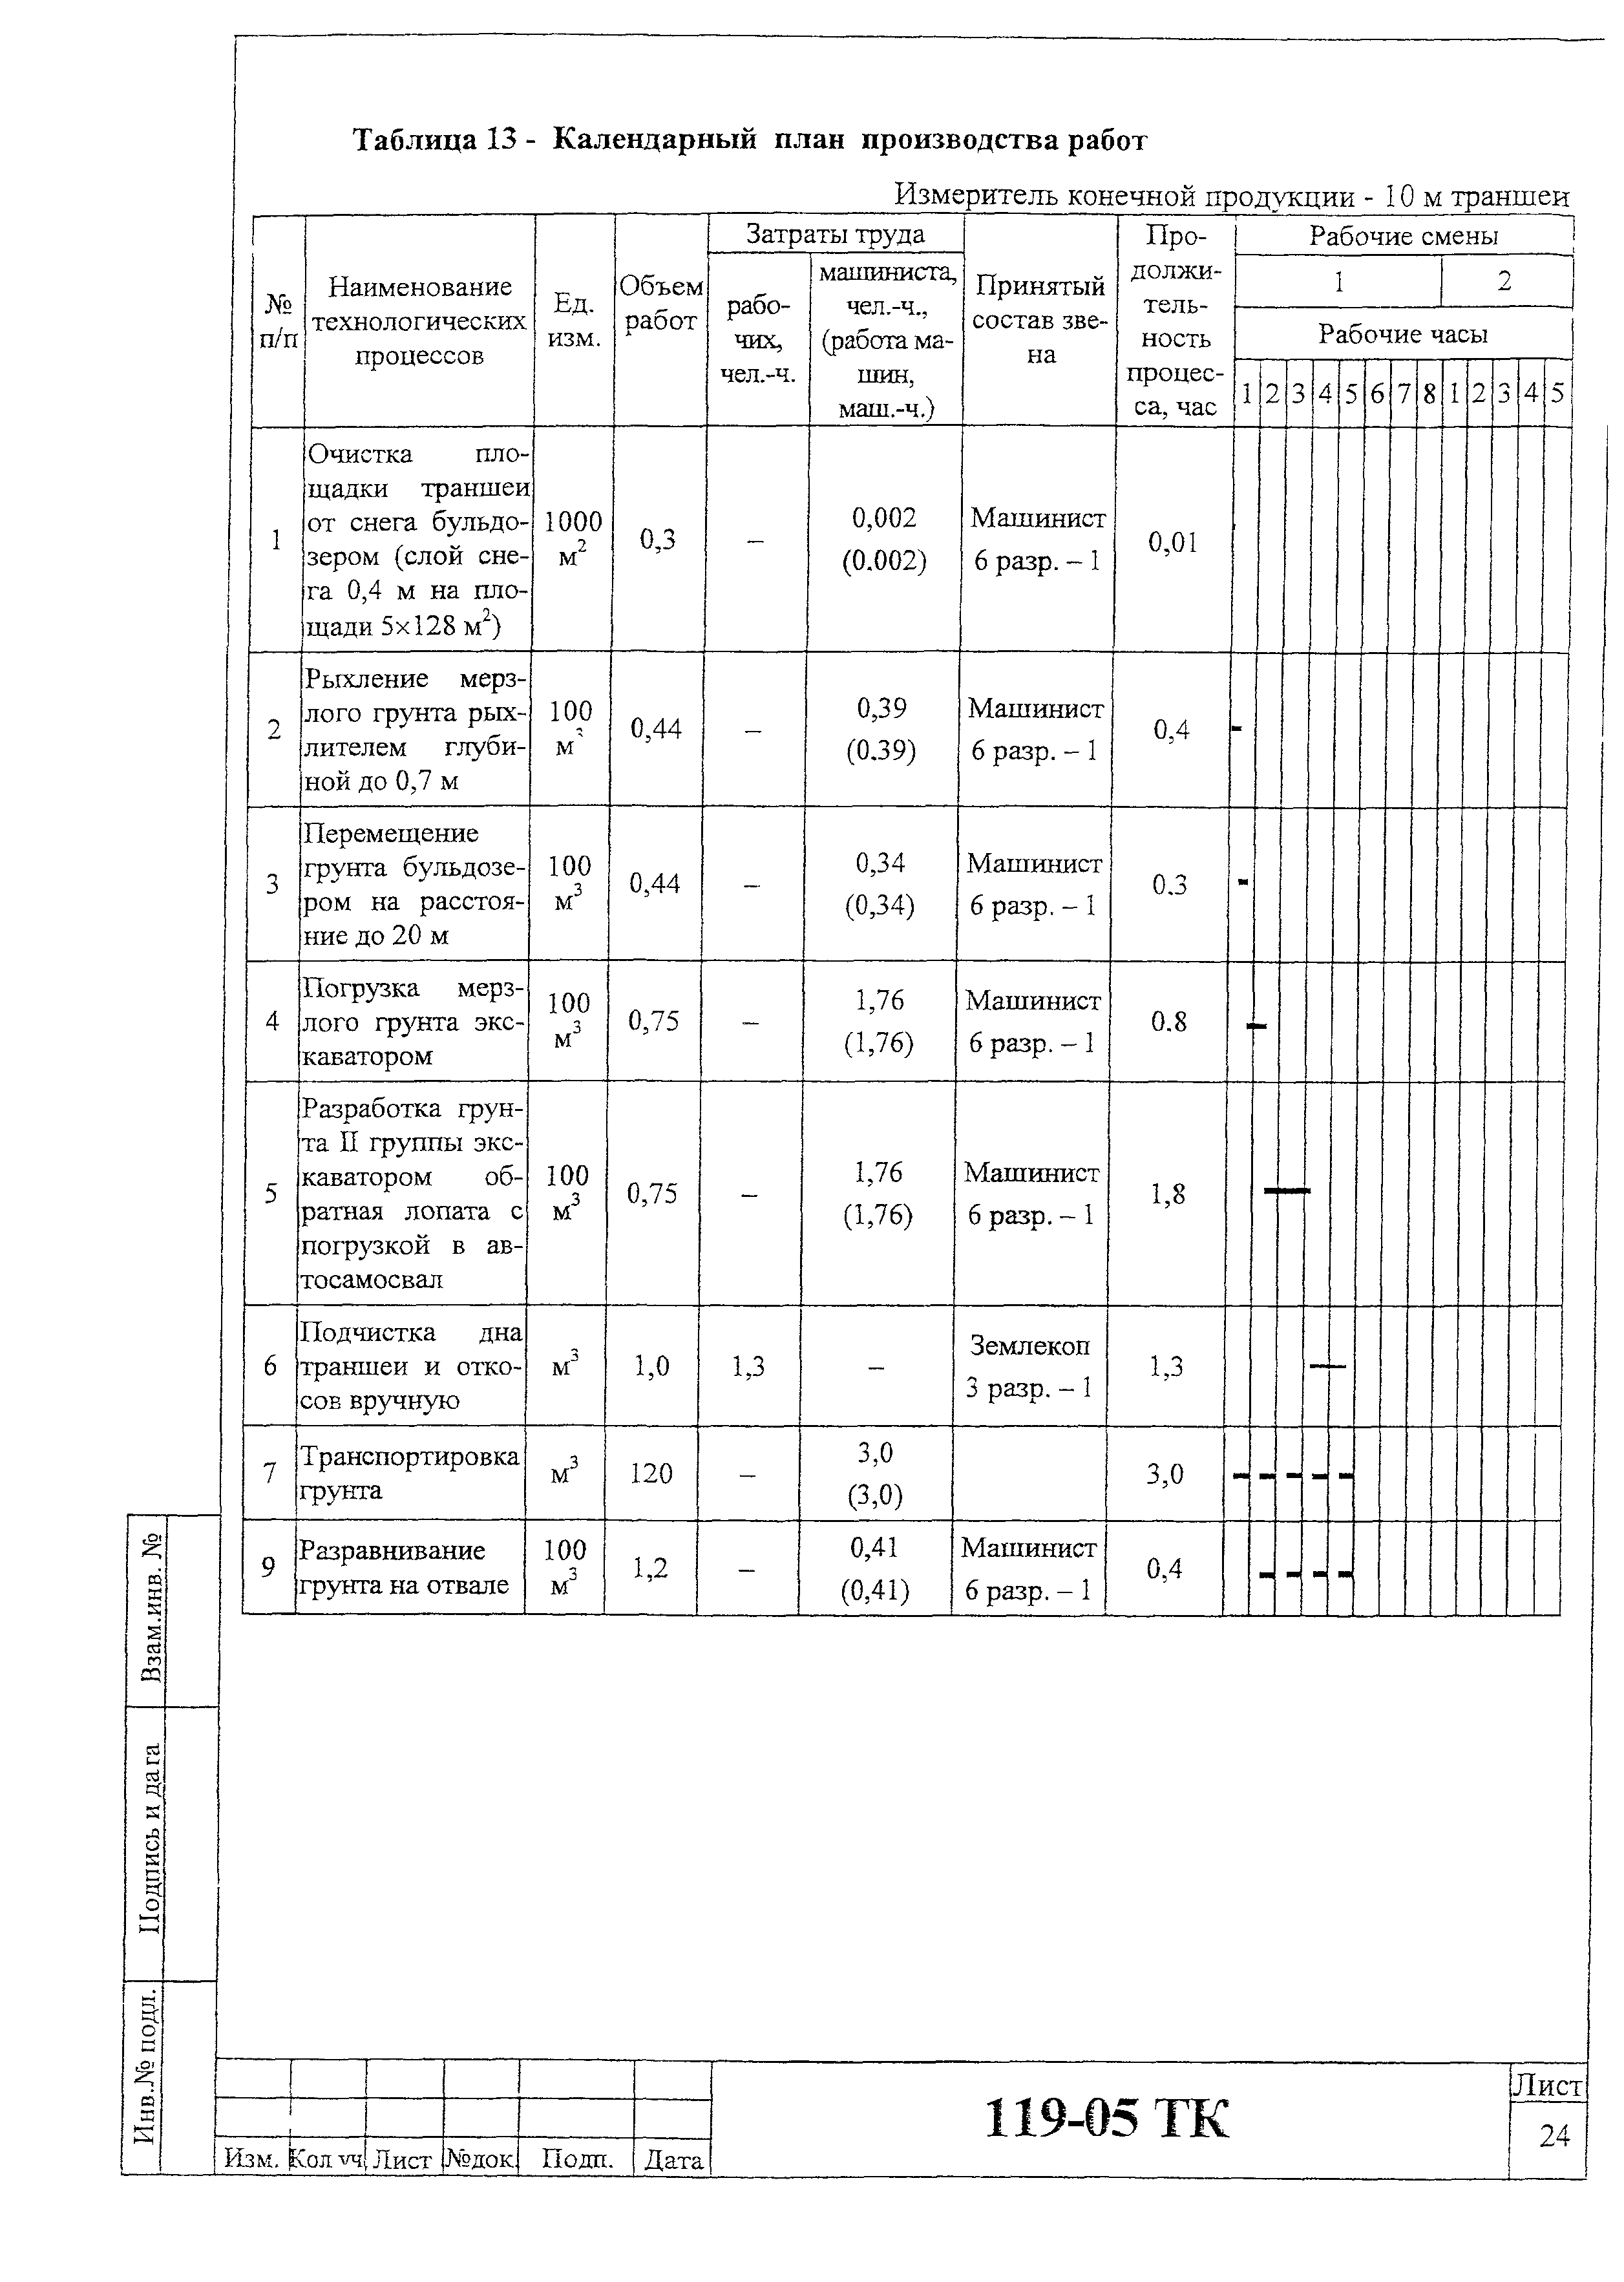 Технологическая карта 119-05 ТК